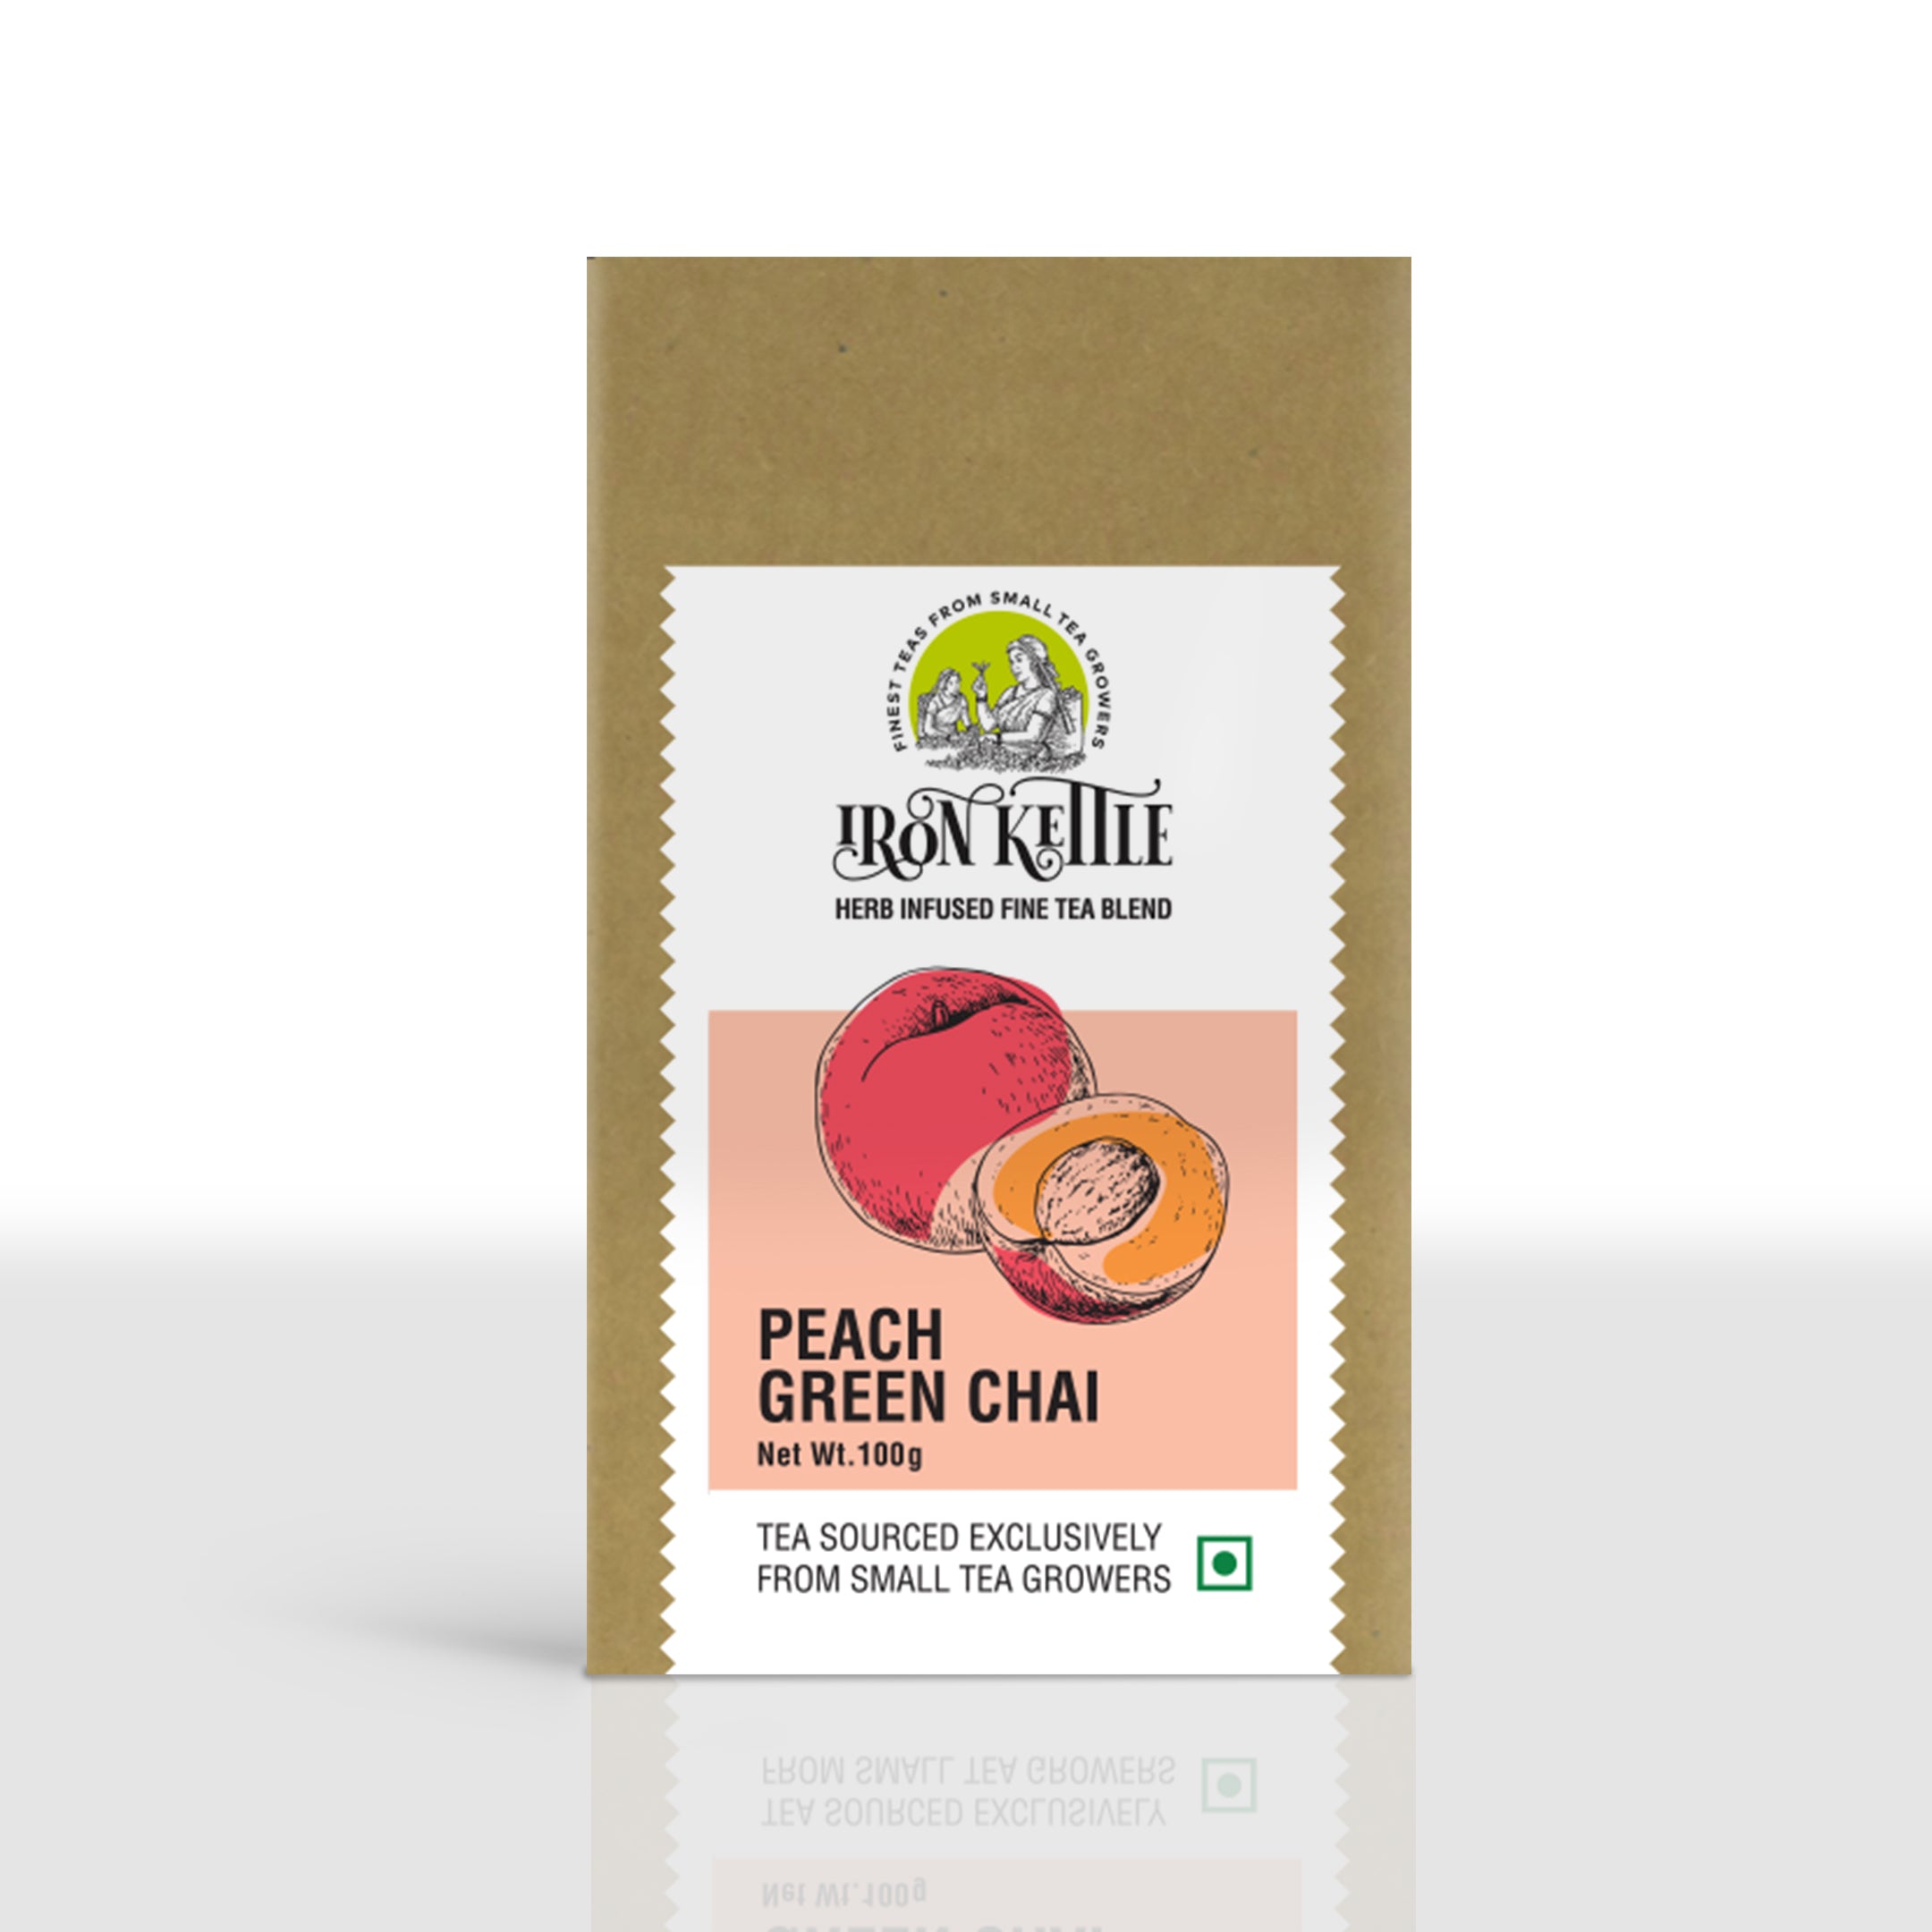 Peach Green Chai